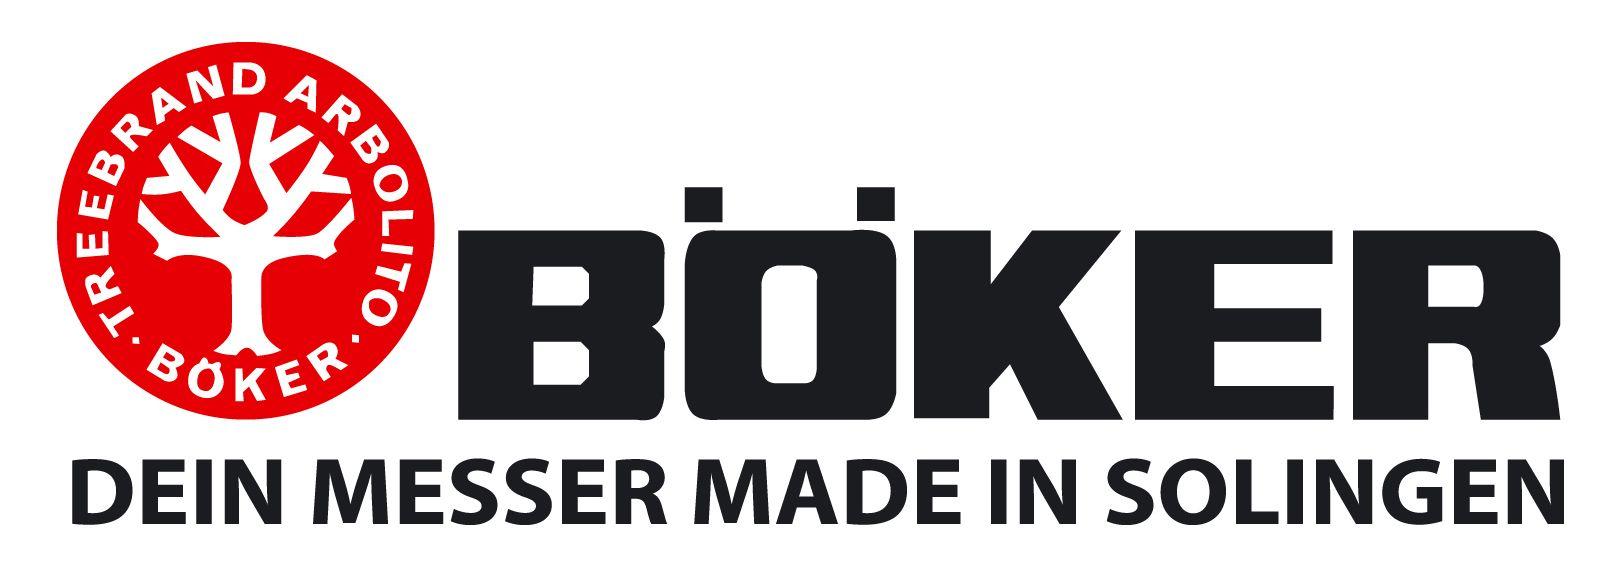 Boker Logo - BOKER peiliai. Prekių ženklai / Brands. Logo sign, Logos, Axe